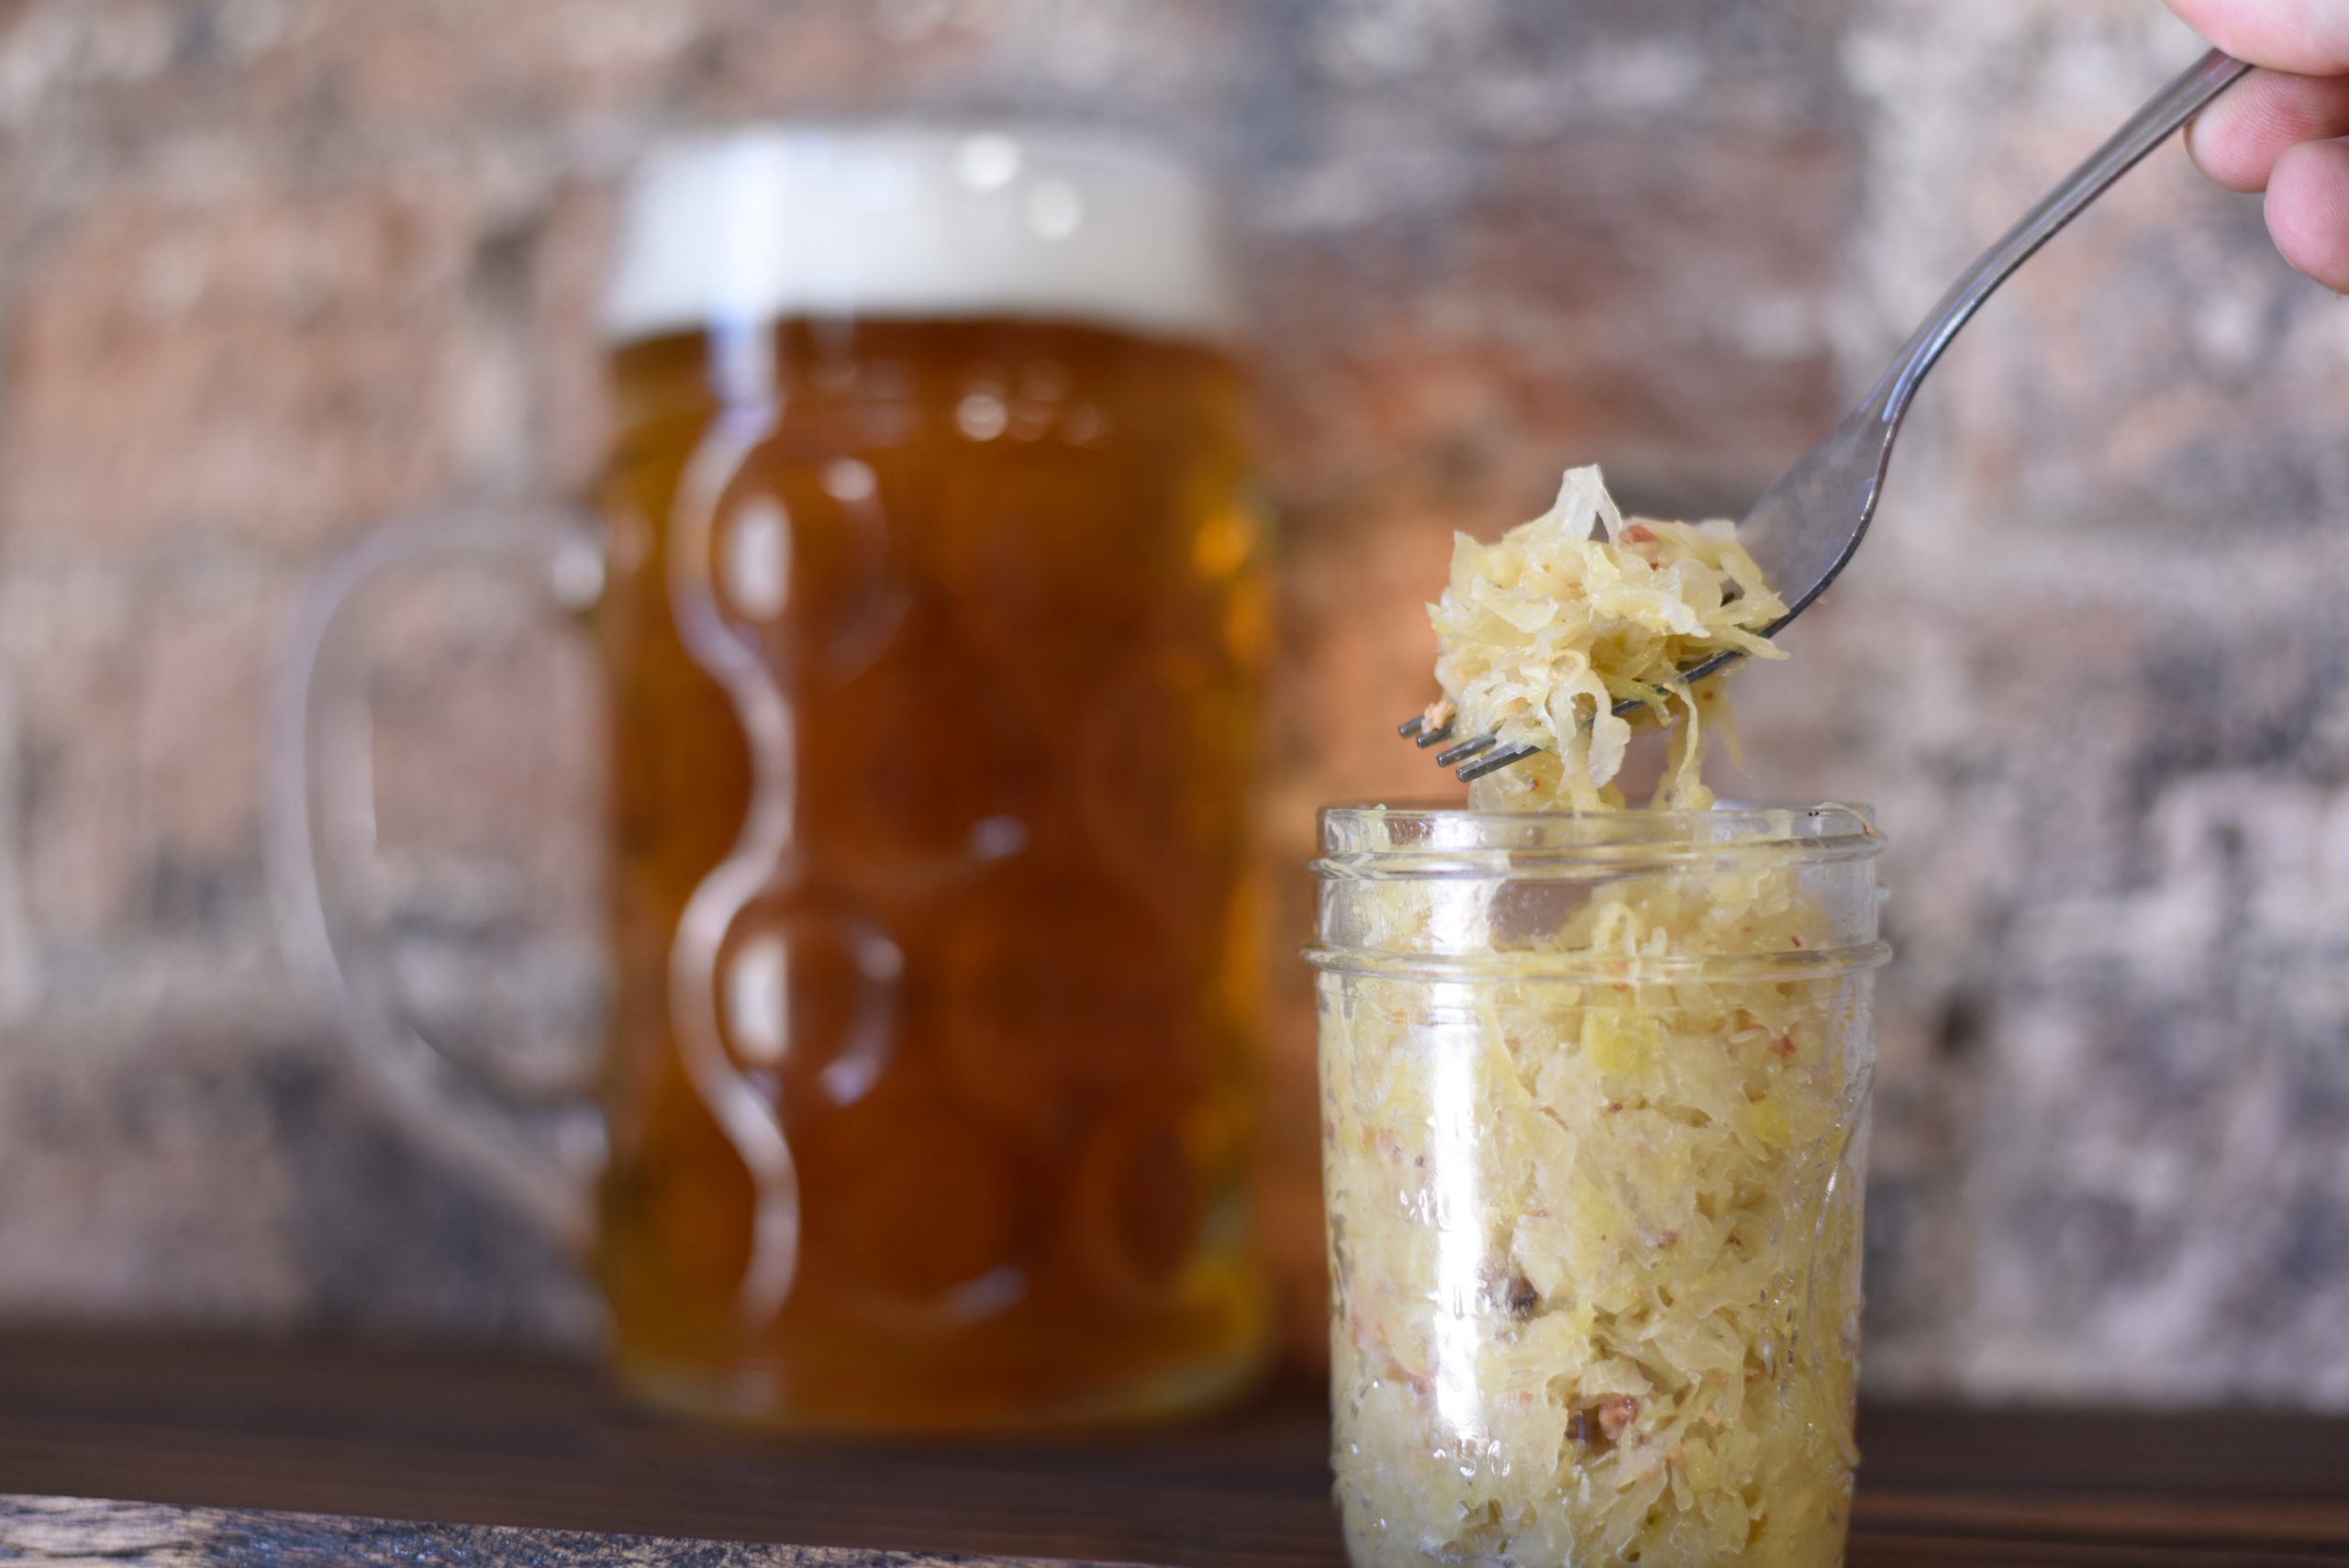 Sauerkraut stored in a mason jar